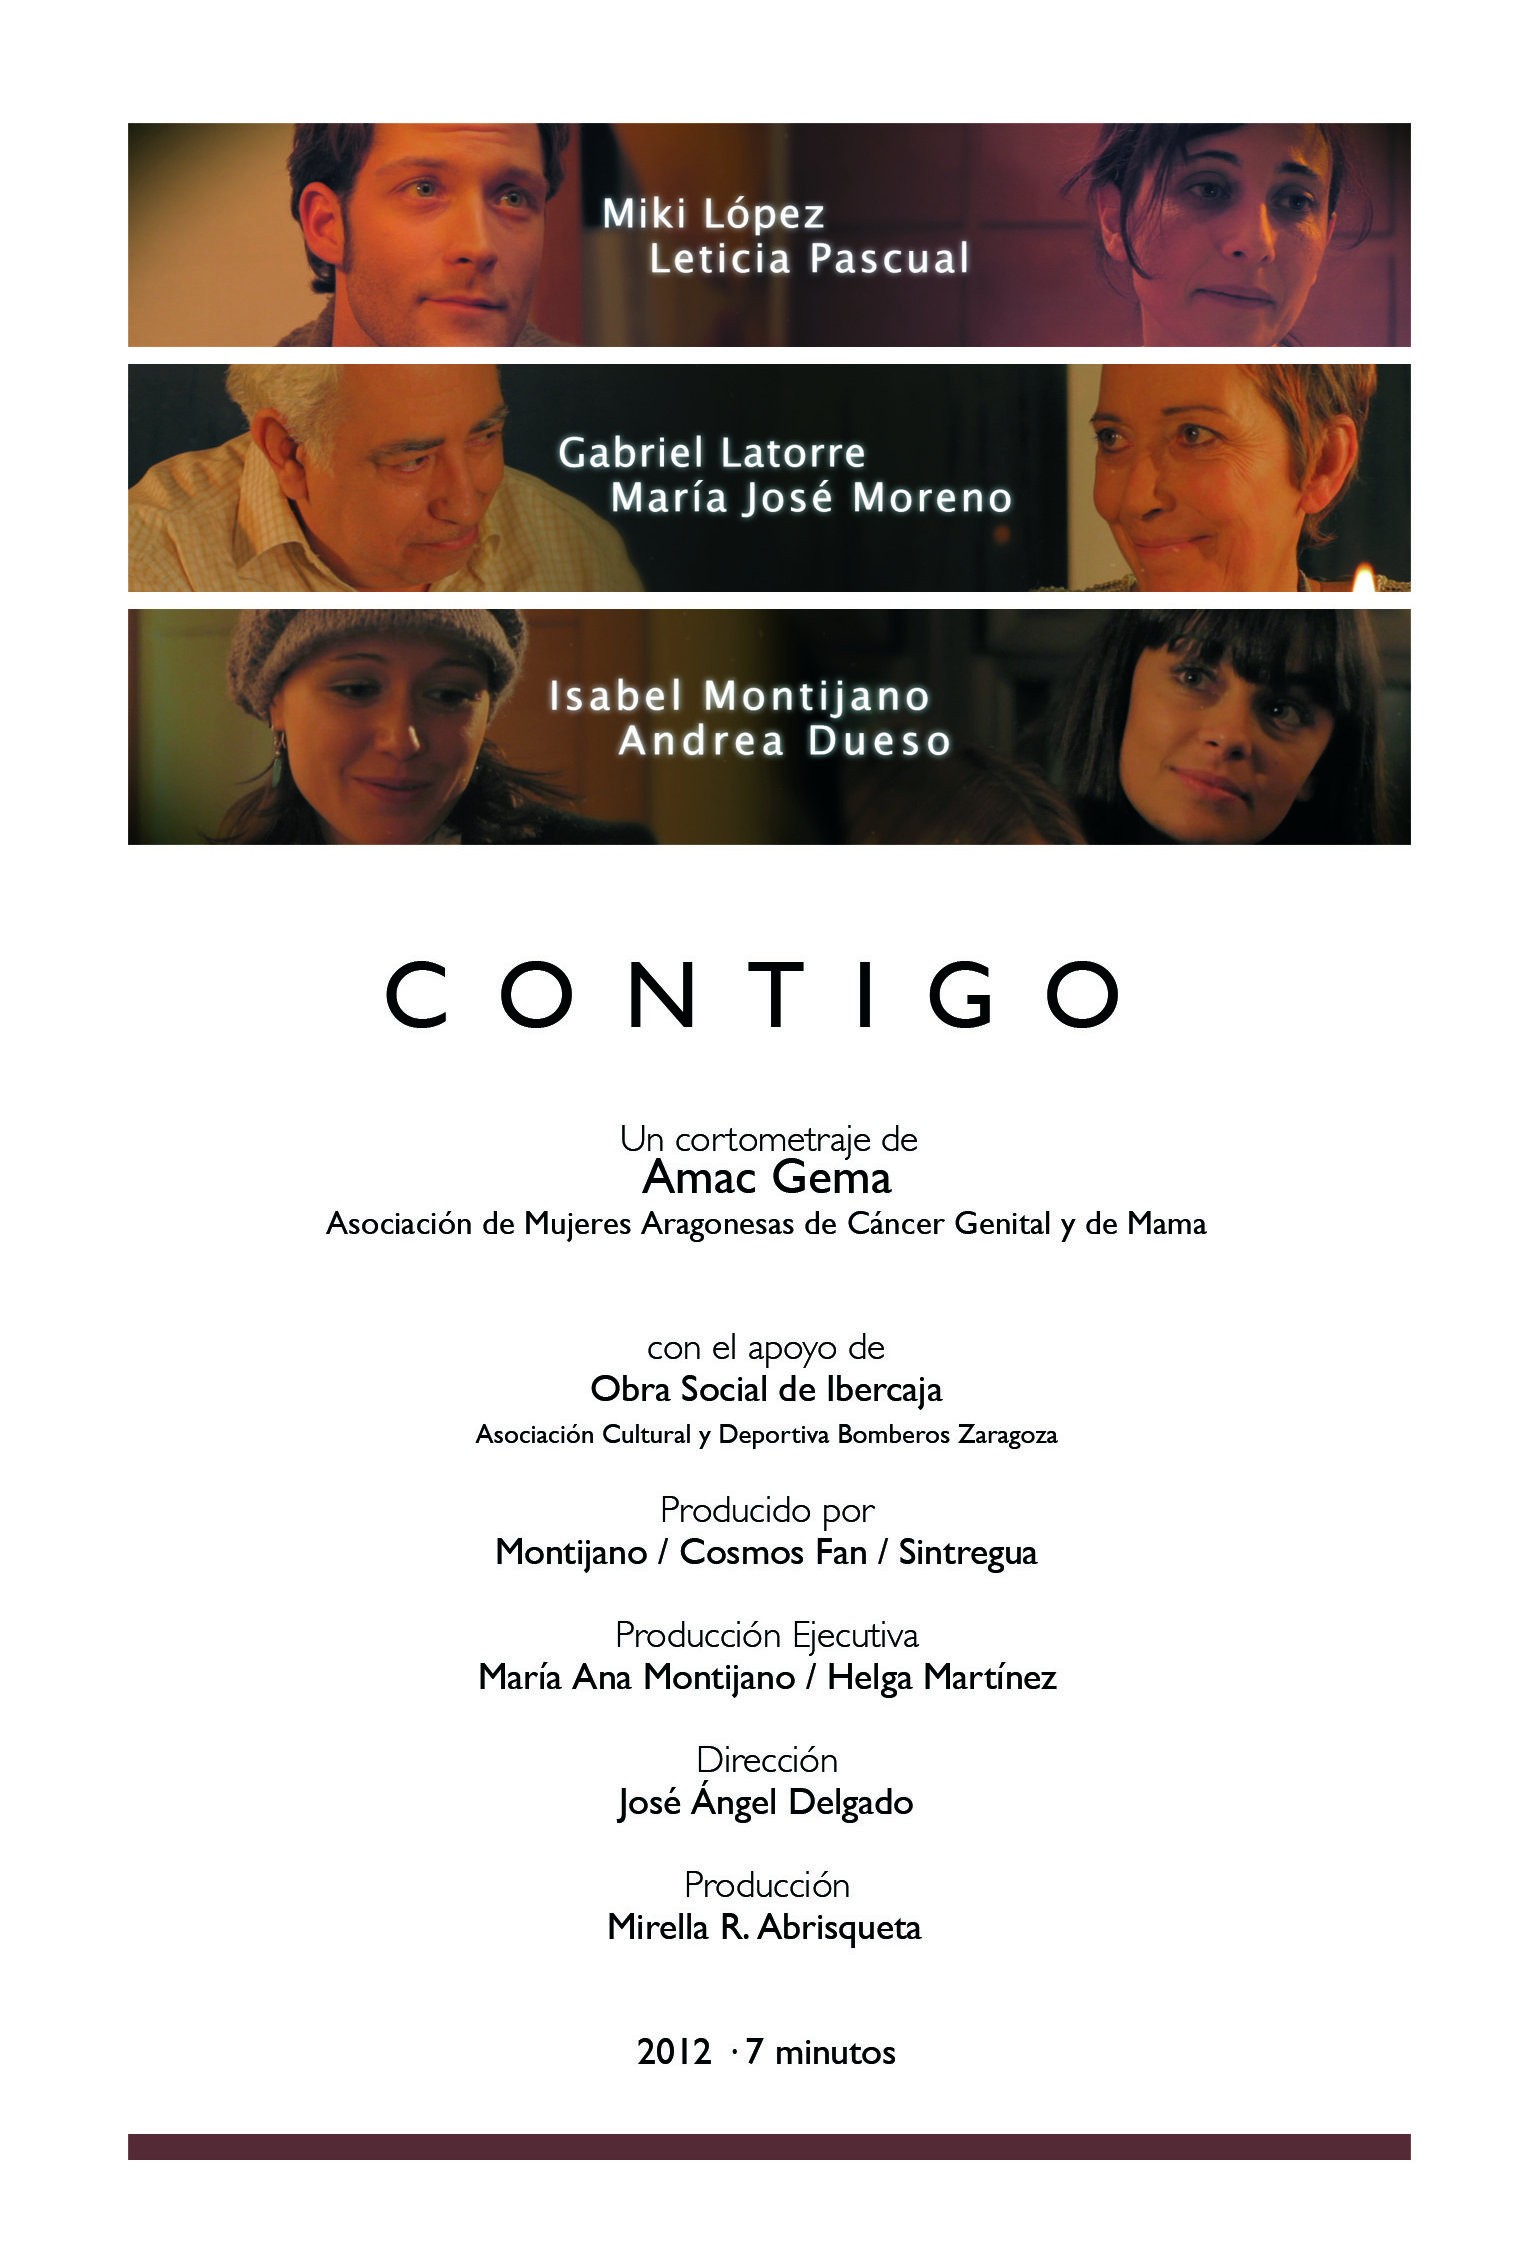 Mega Sized Movie Poster Image for Contigo